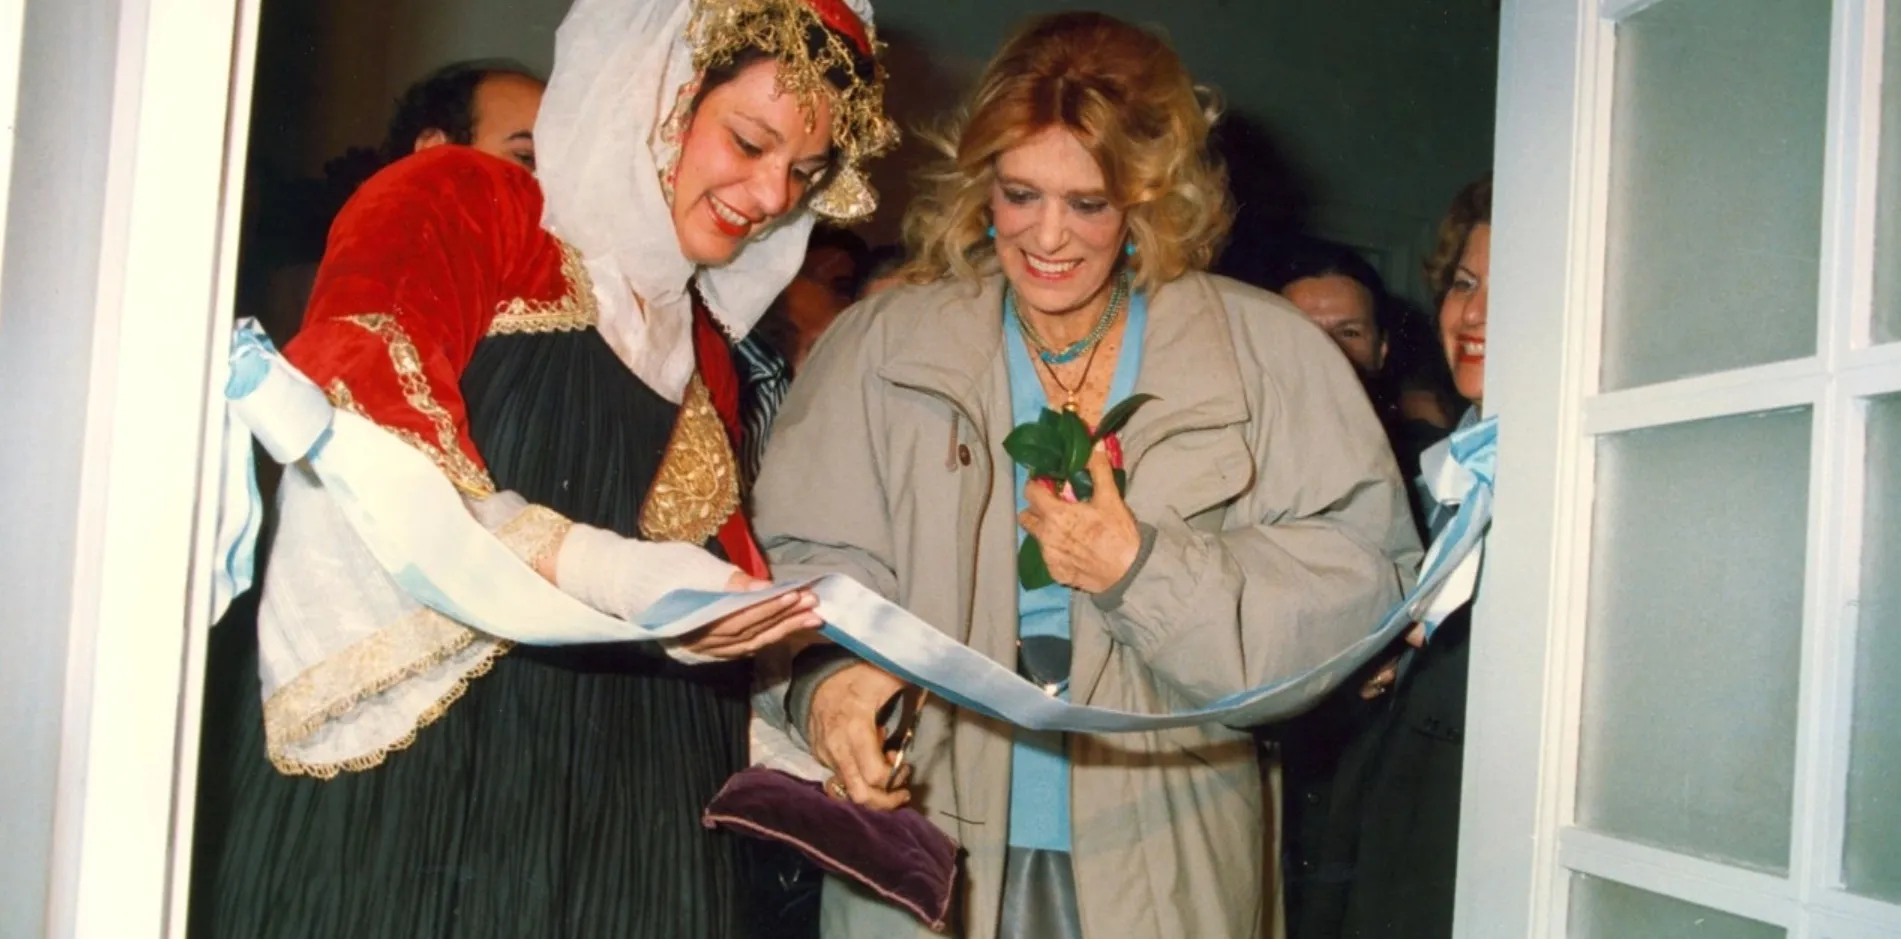 8 Μαρτίου 1988. Η τότε Υπουργός Πολιτισμού Μελίνα Μερκούρη κόβει την κορδέλα του Μουσείου. Αρχείο ΜΕΛΕ.